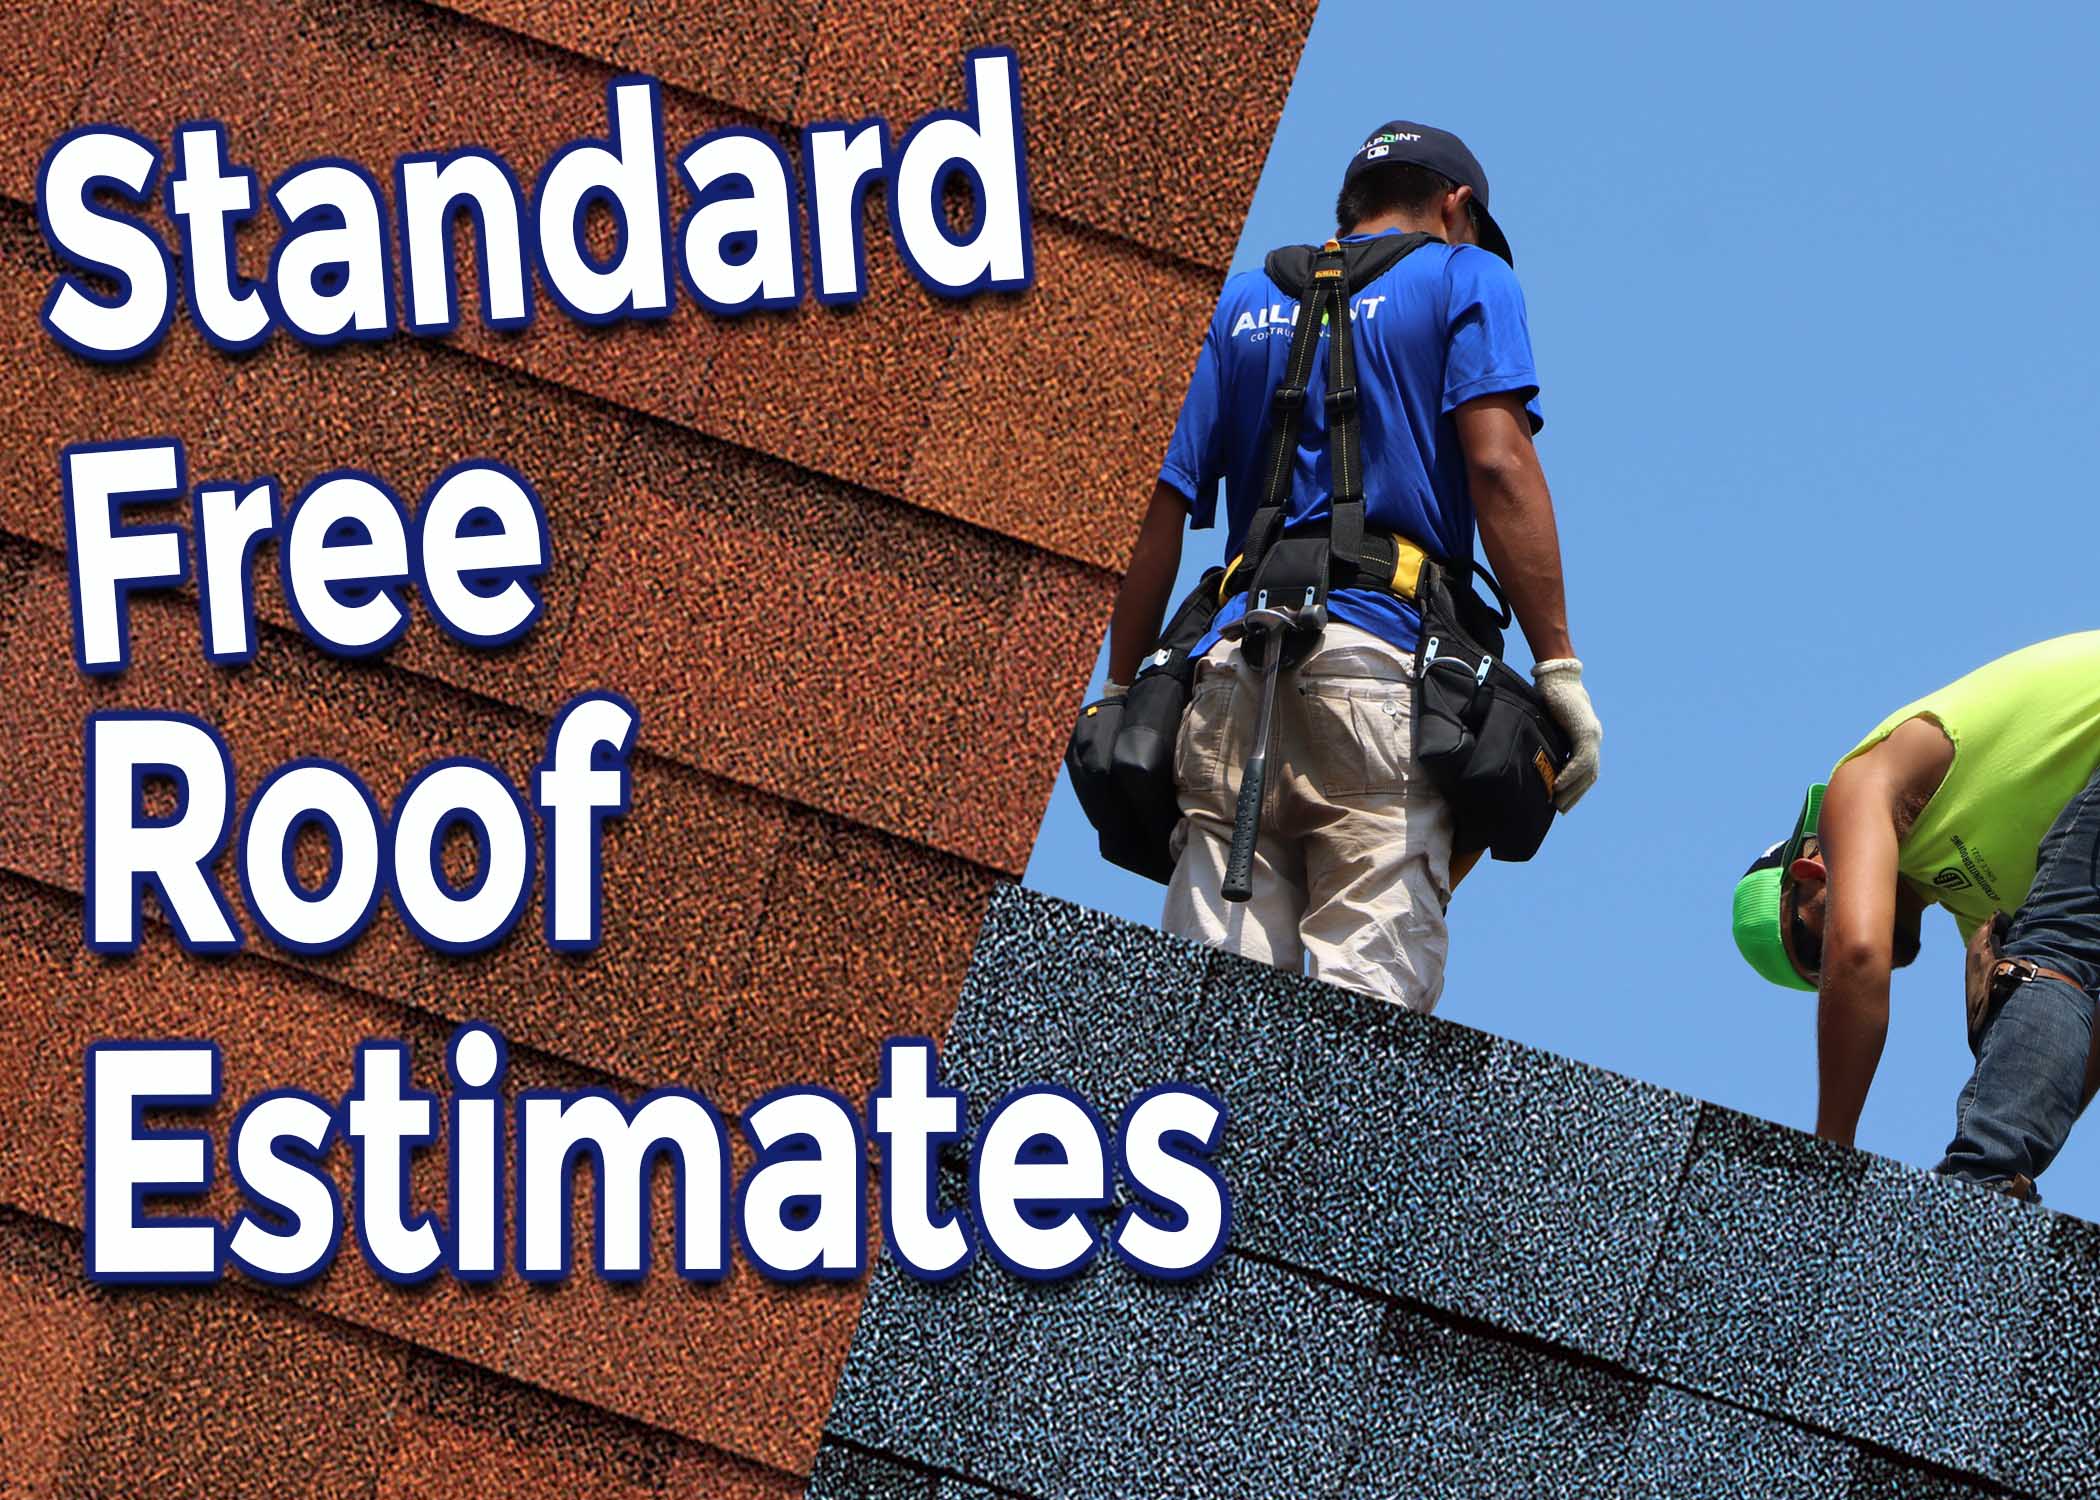 roofing-contractors